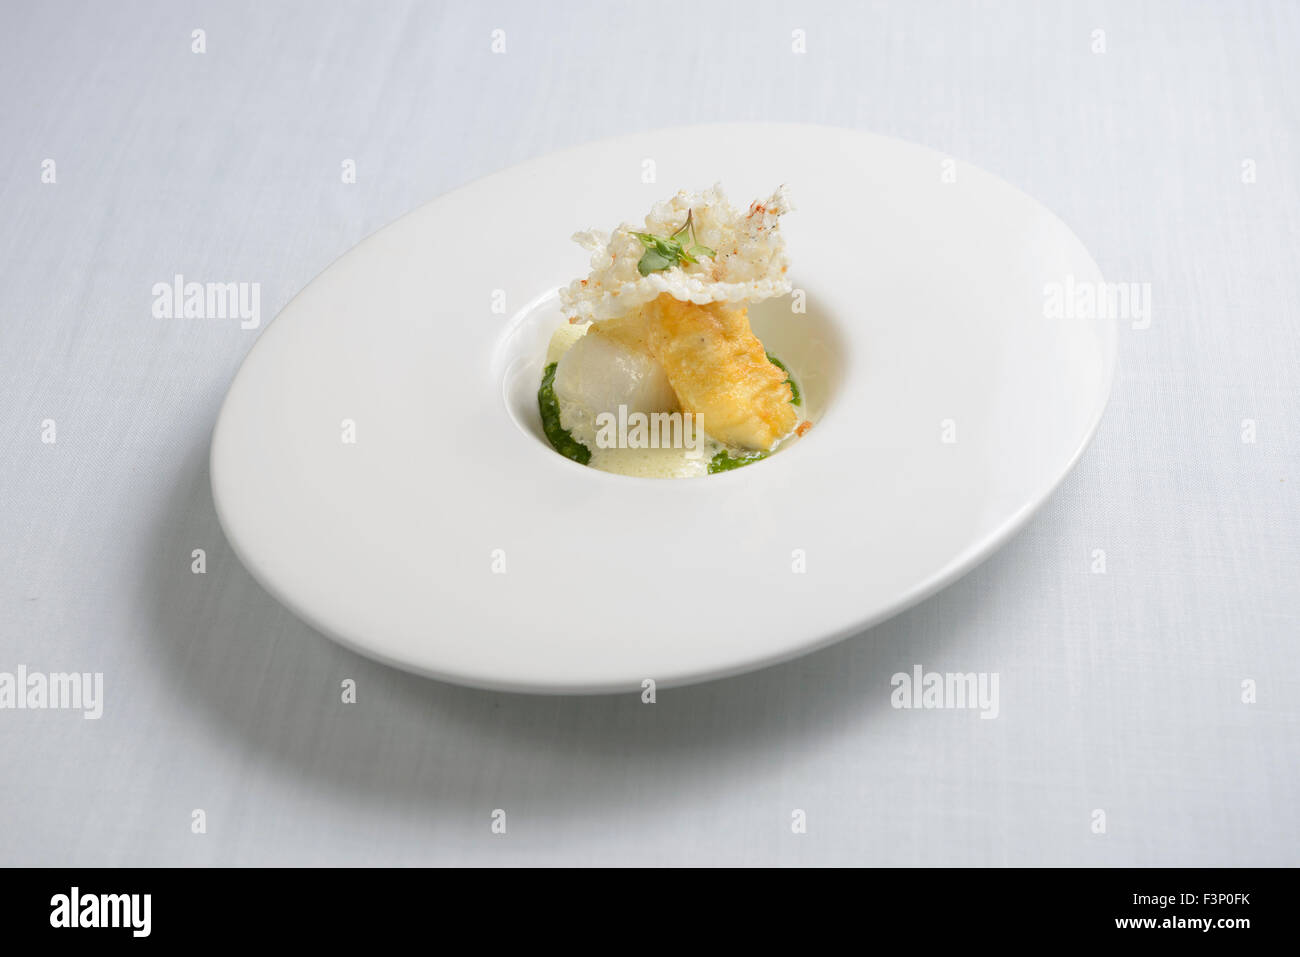 Nouvelle cuisine gourmet cod fish dish Stock Photo